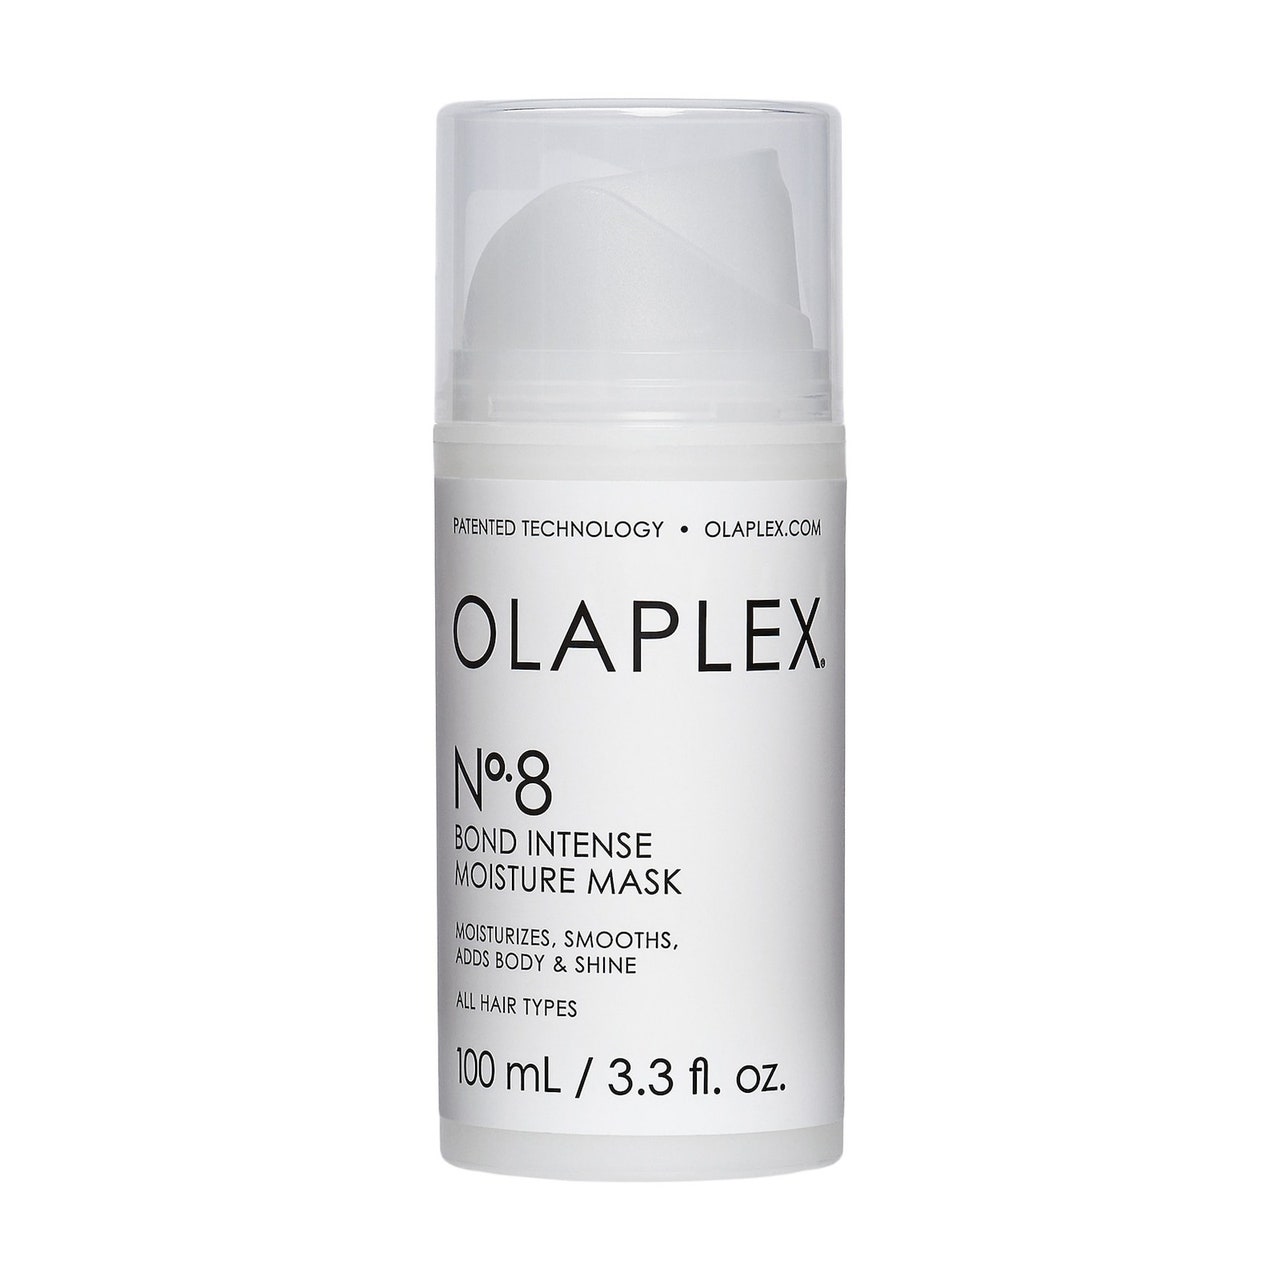 Olaplex No.8 Bond Intense Moisture Mask, gedrungene weiße Flasche auf weißem Hintergrund